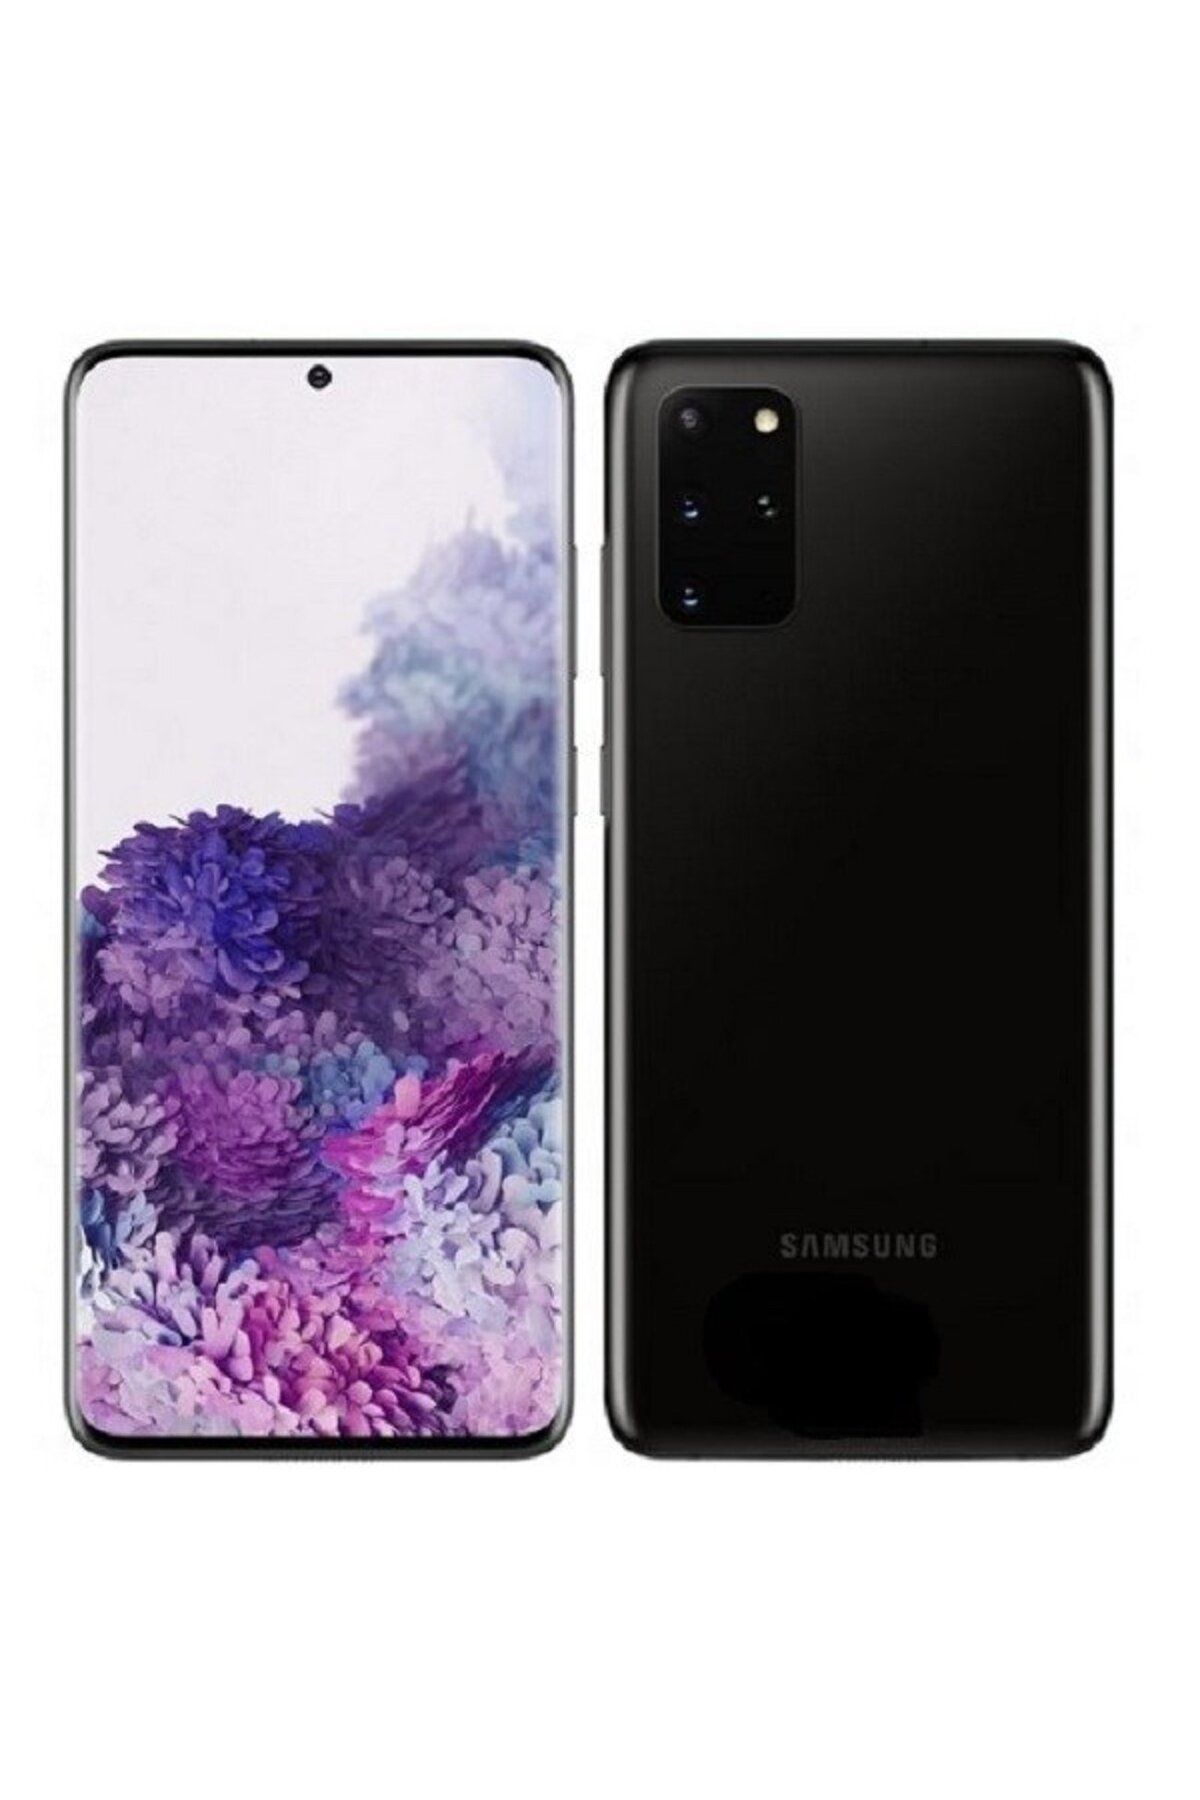 Samsung Yenilenmiş Samsung Galaxy S20 Plus 128GB Siyah A Kalite